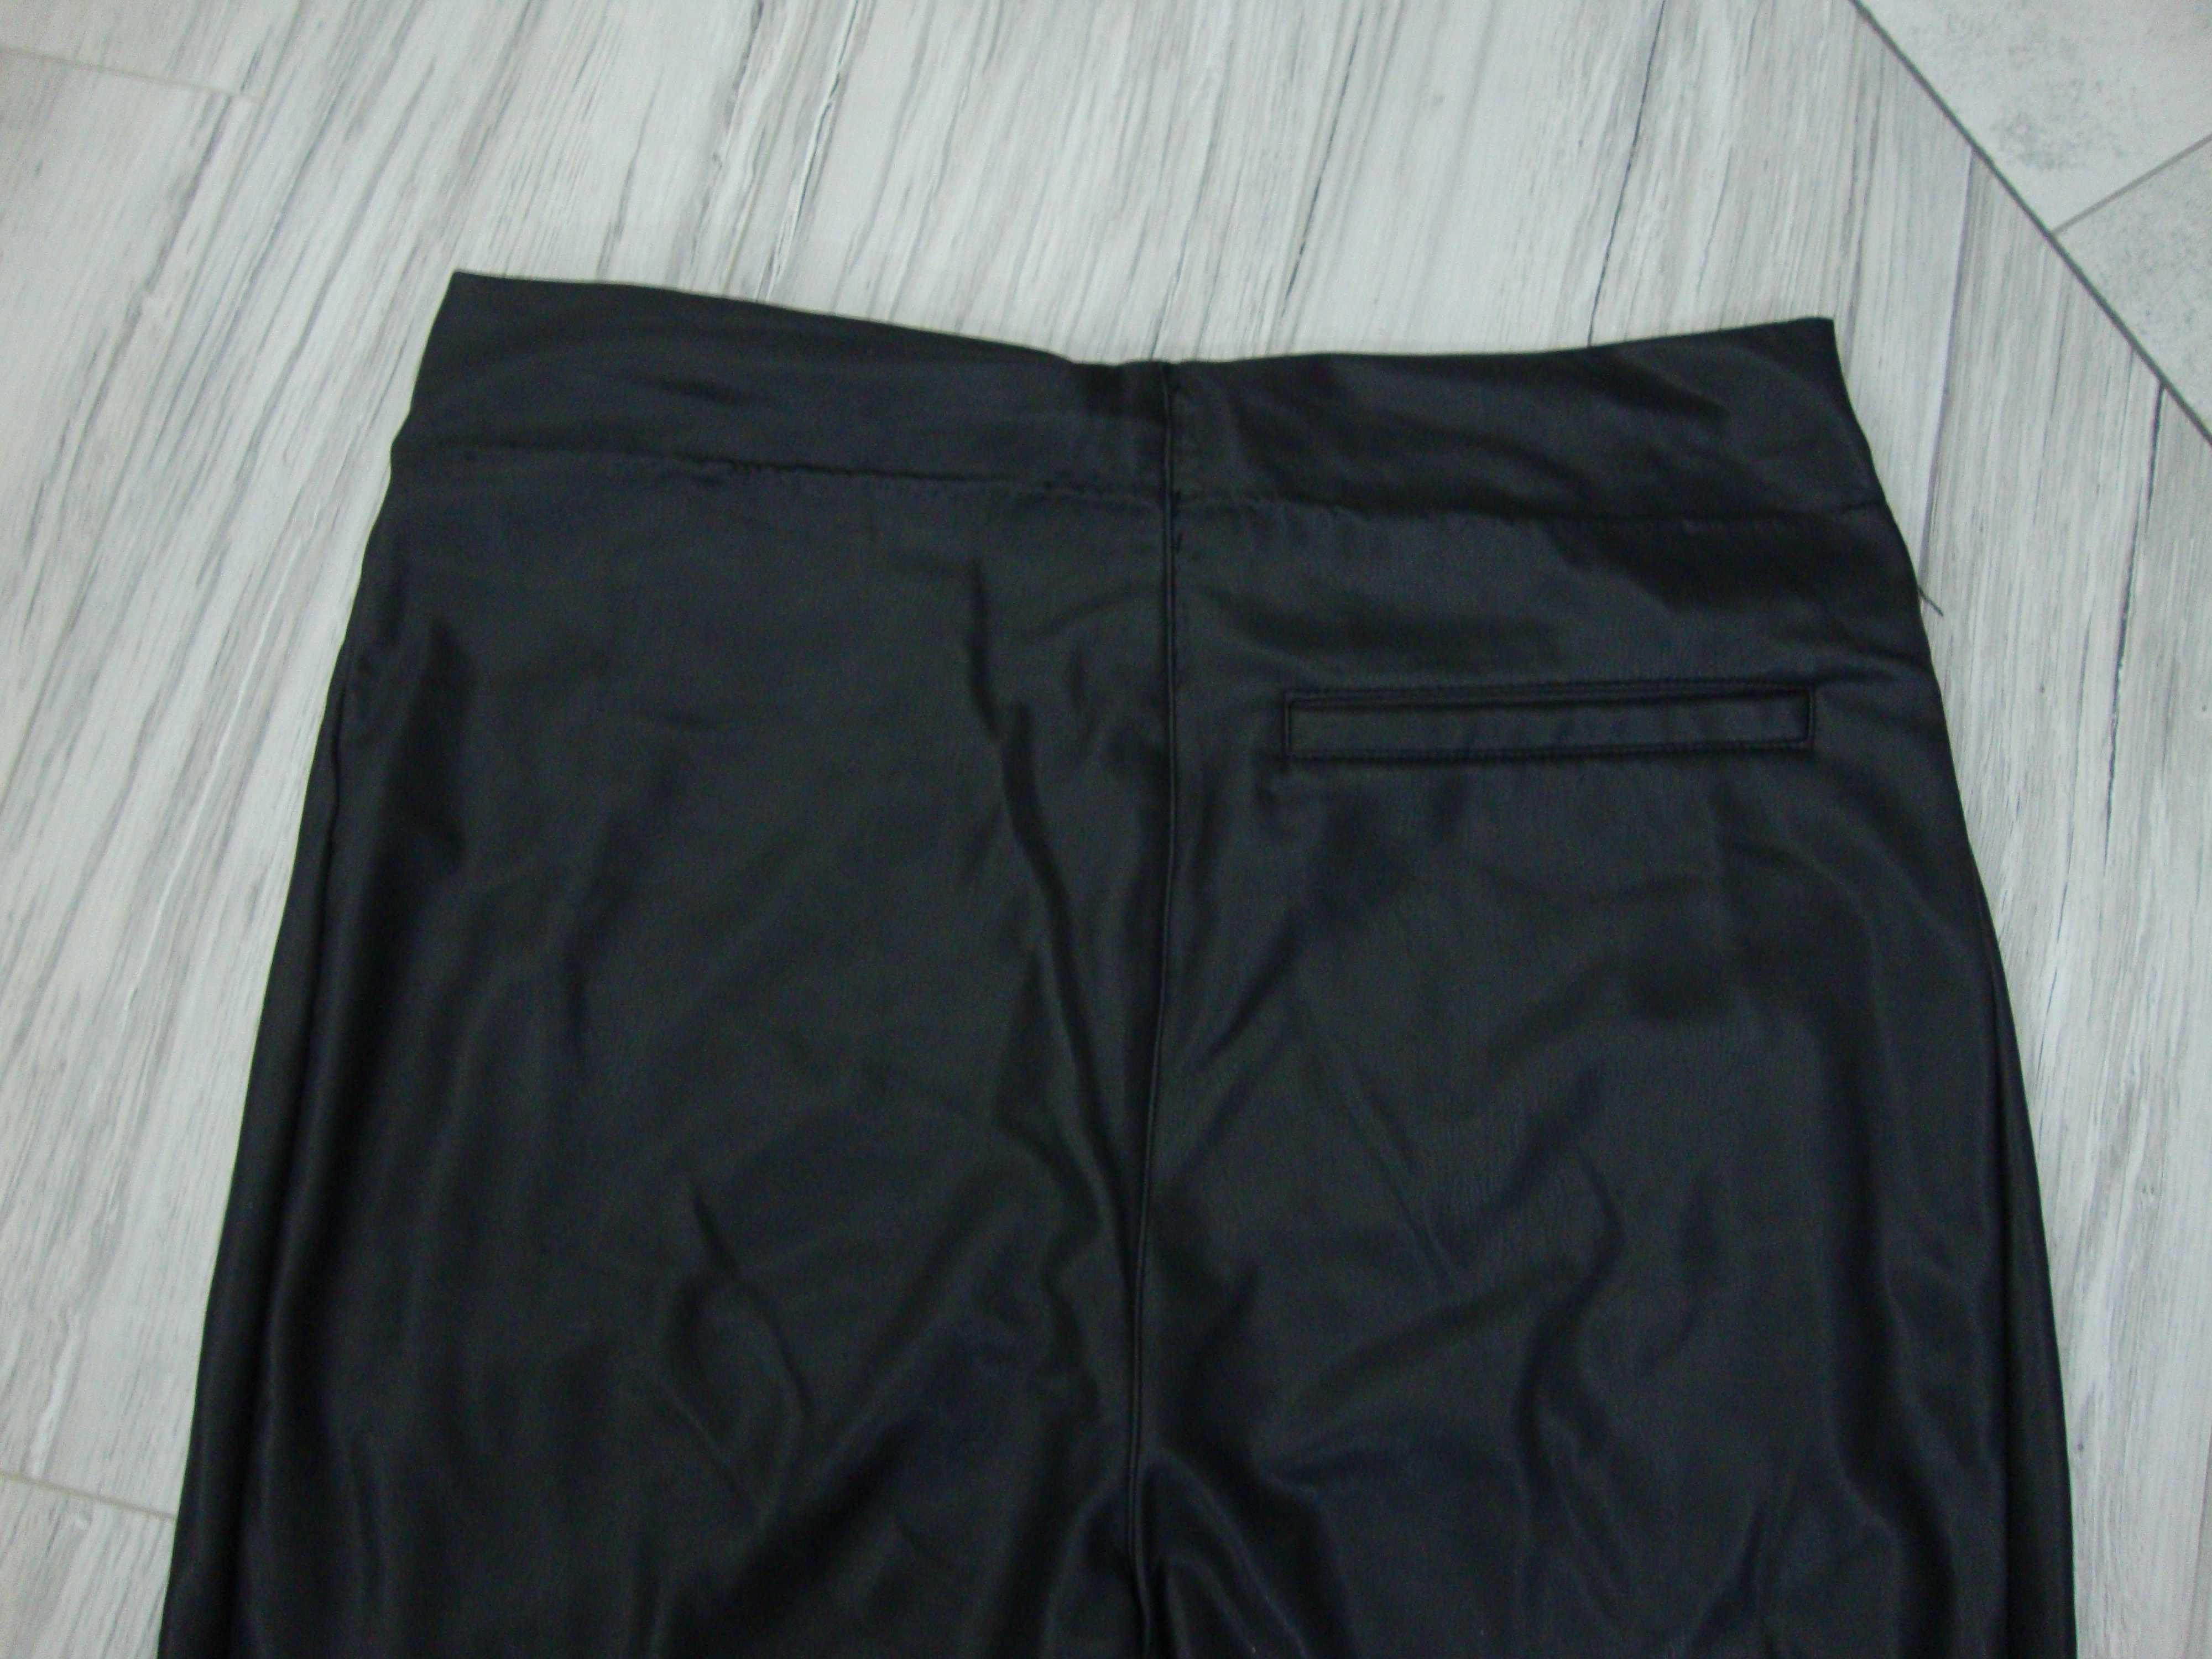 Spodnie skóra ekologiczna damskie czarne rozmiar XL